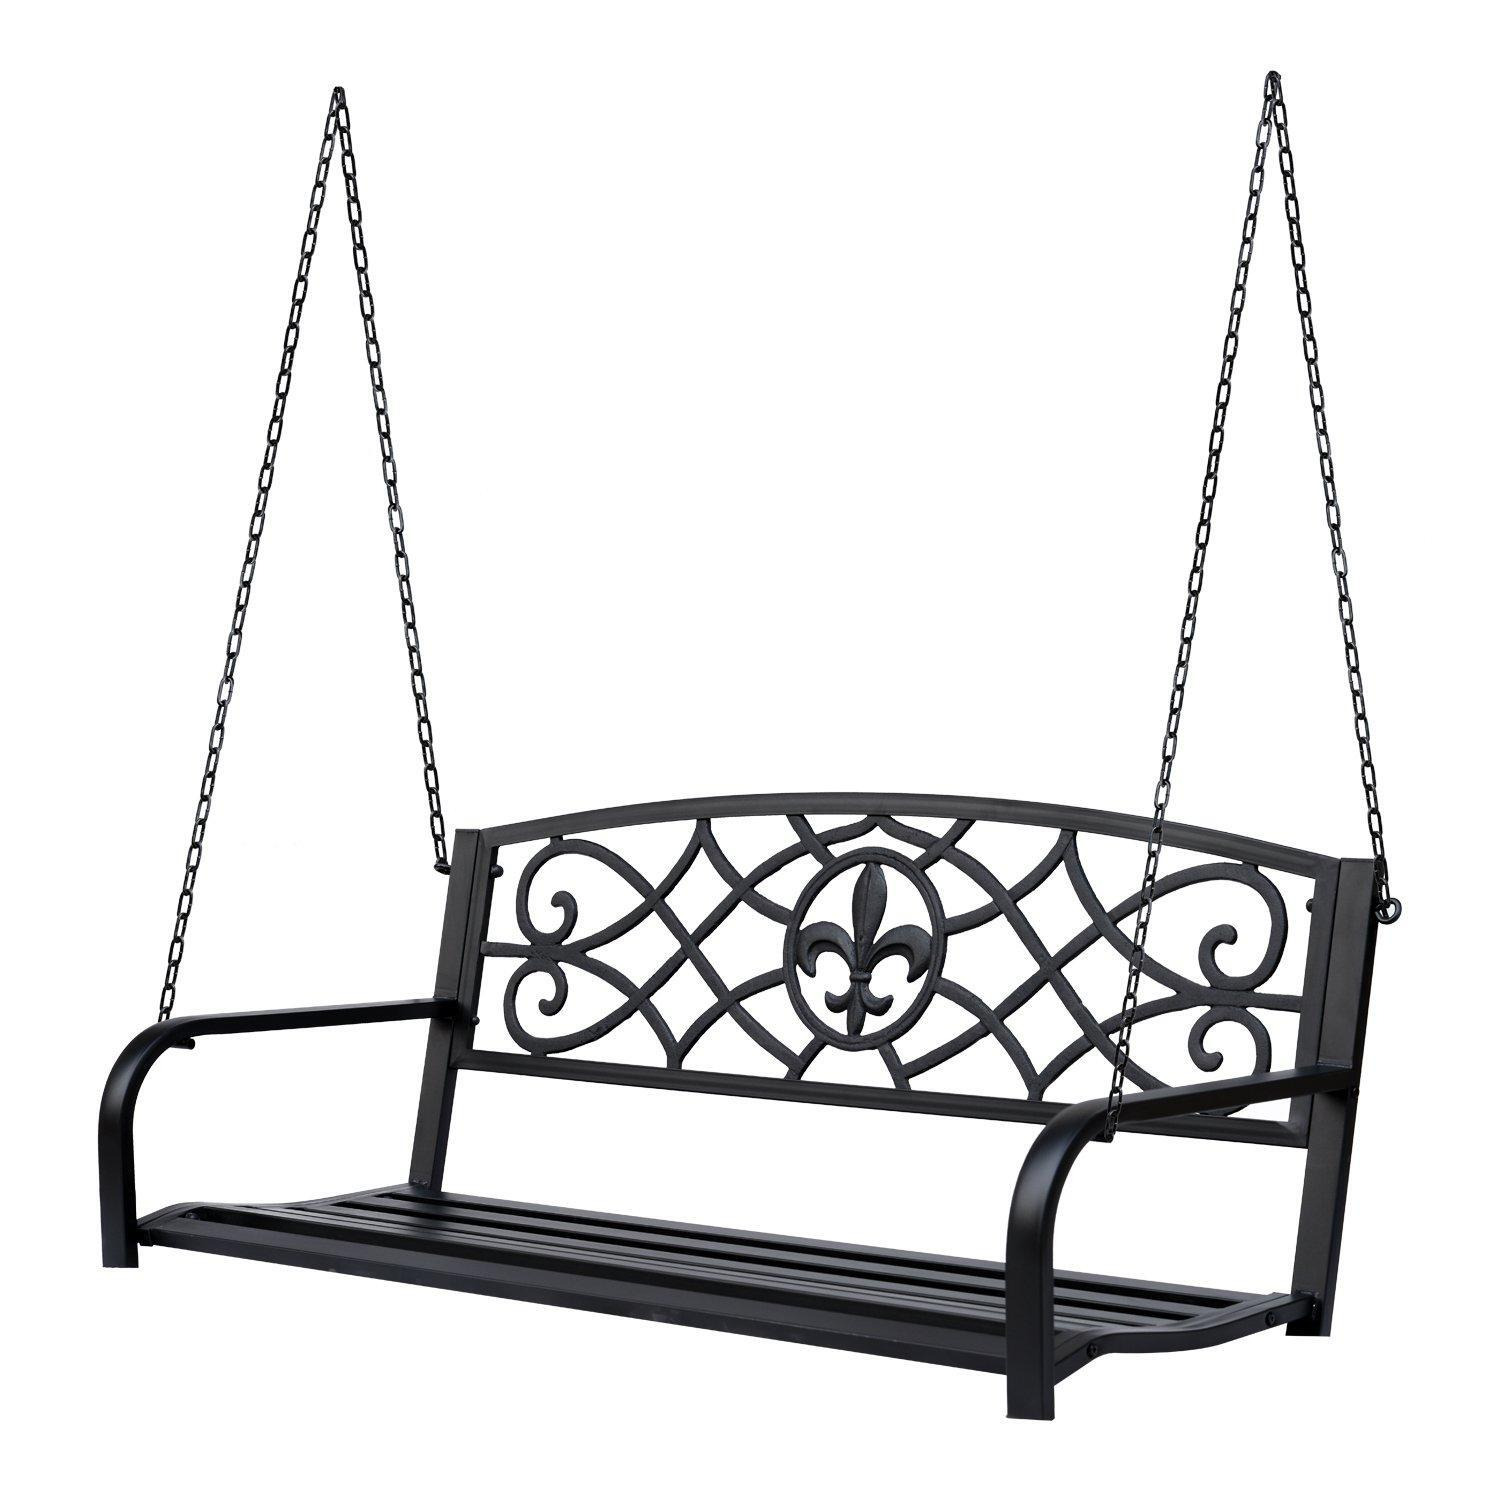 Outdoor Steel Fleur-De-Lis Porch Swing Garden Hanging Bench - image 1